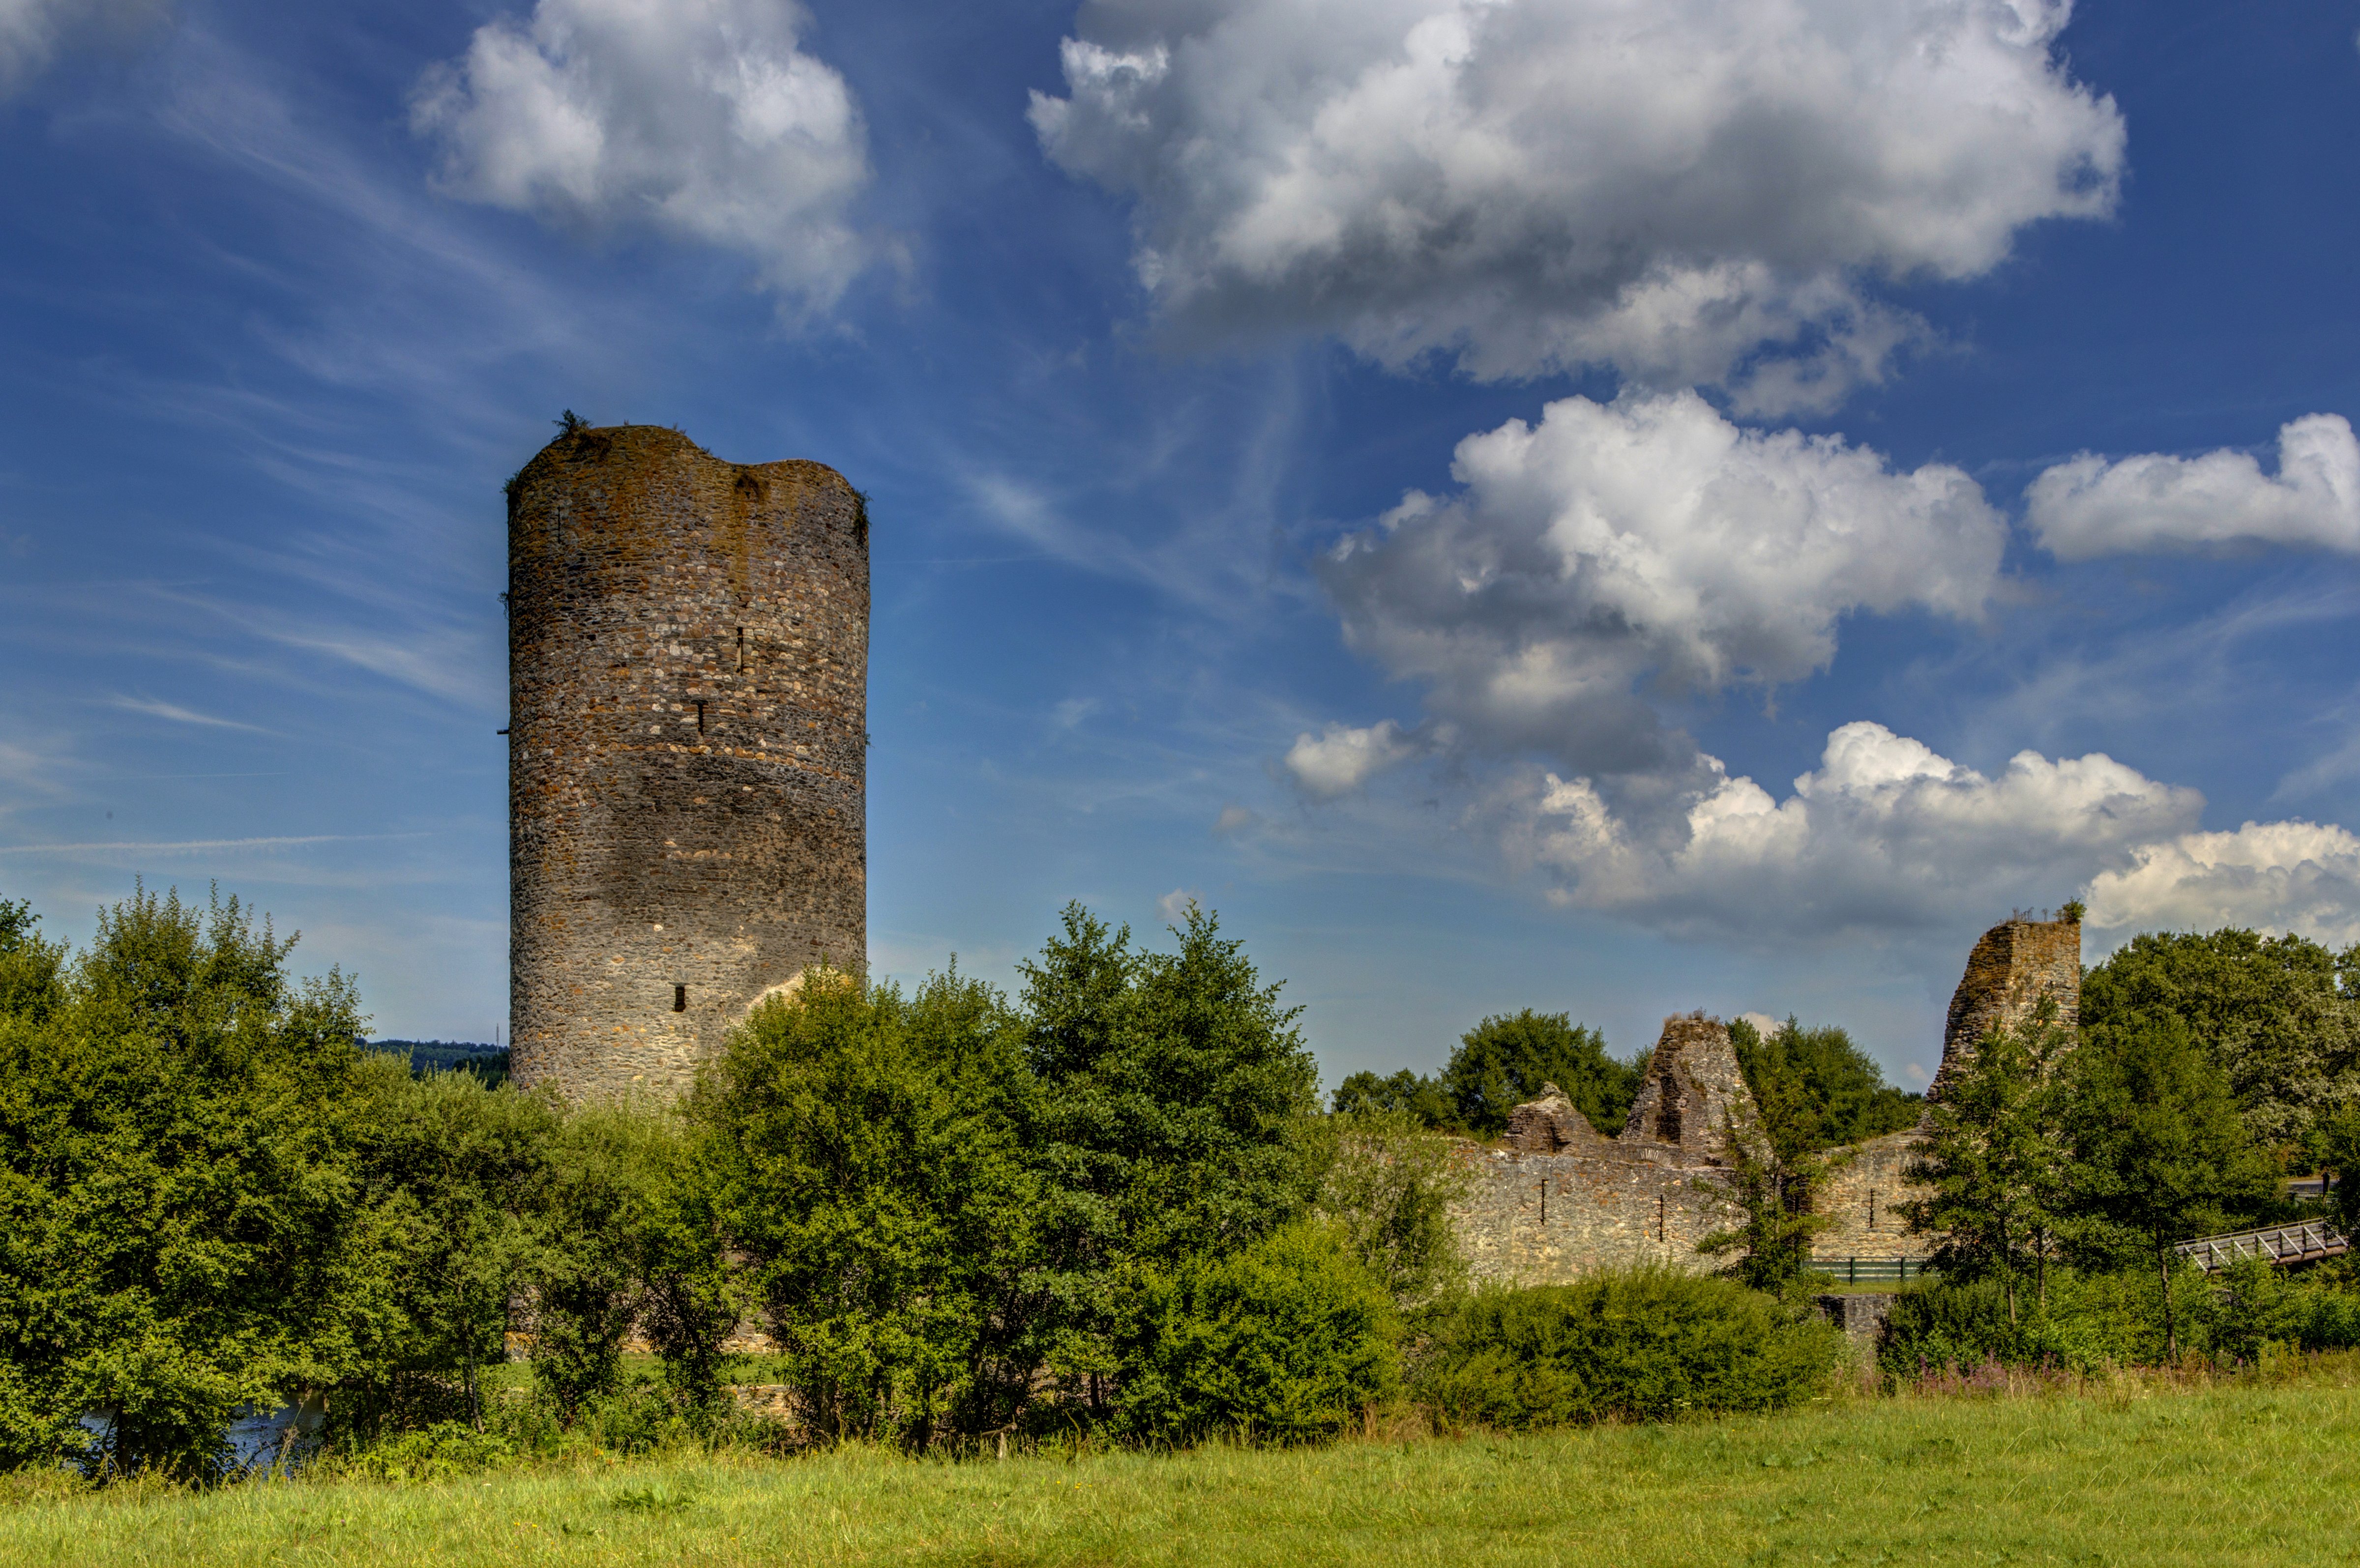 germany, Castles, Ruins, Sky, Trees, Clouds, Burg, Balduinstein, Ruine, Cities Wallpaper